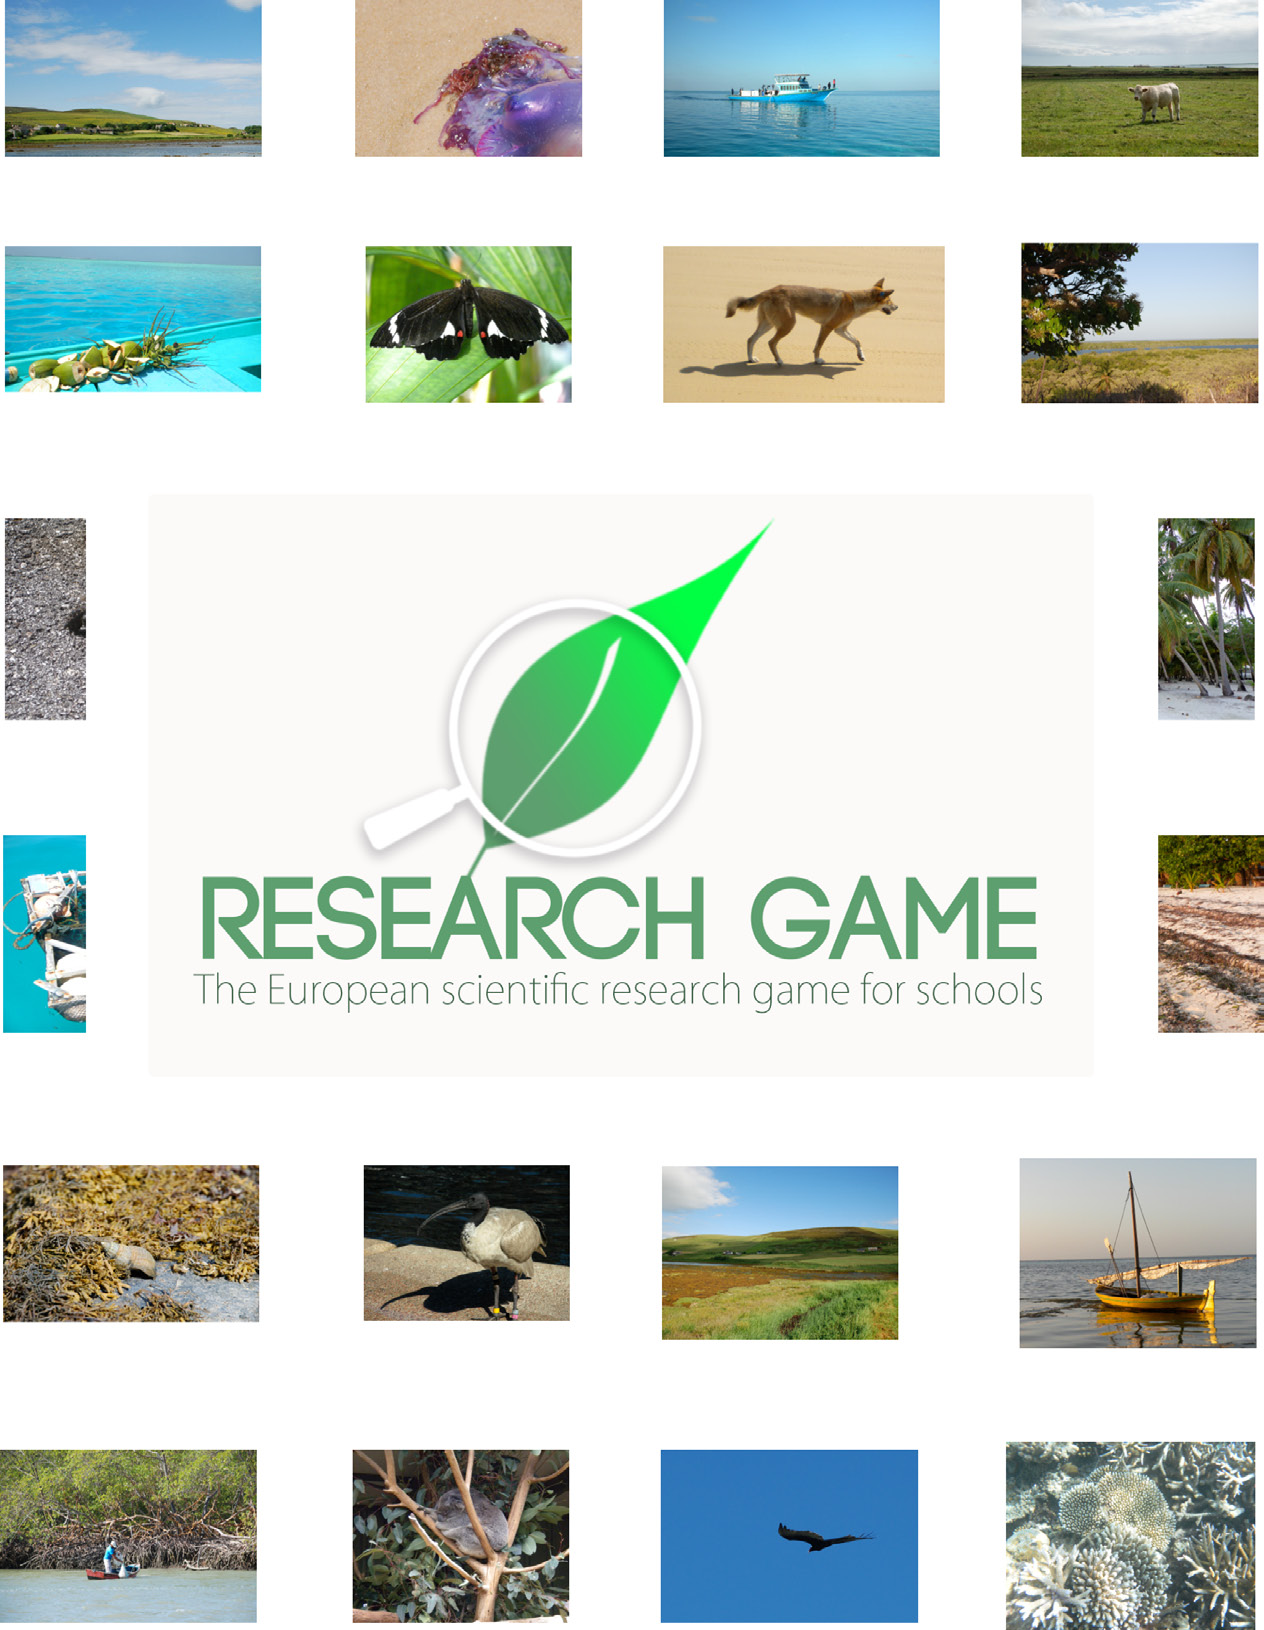 Projeto Research Game: Guia para Professores motivar alunos do ensino